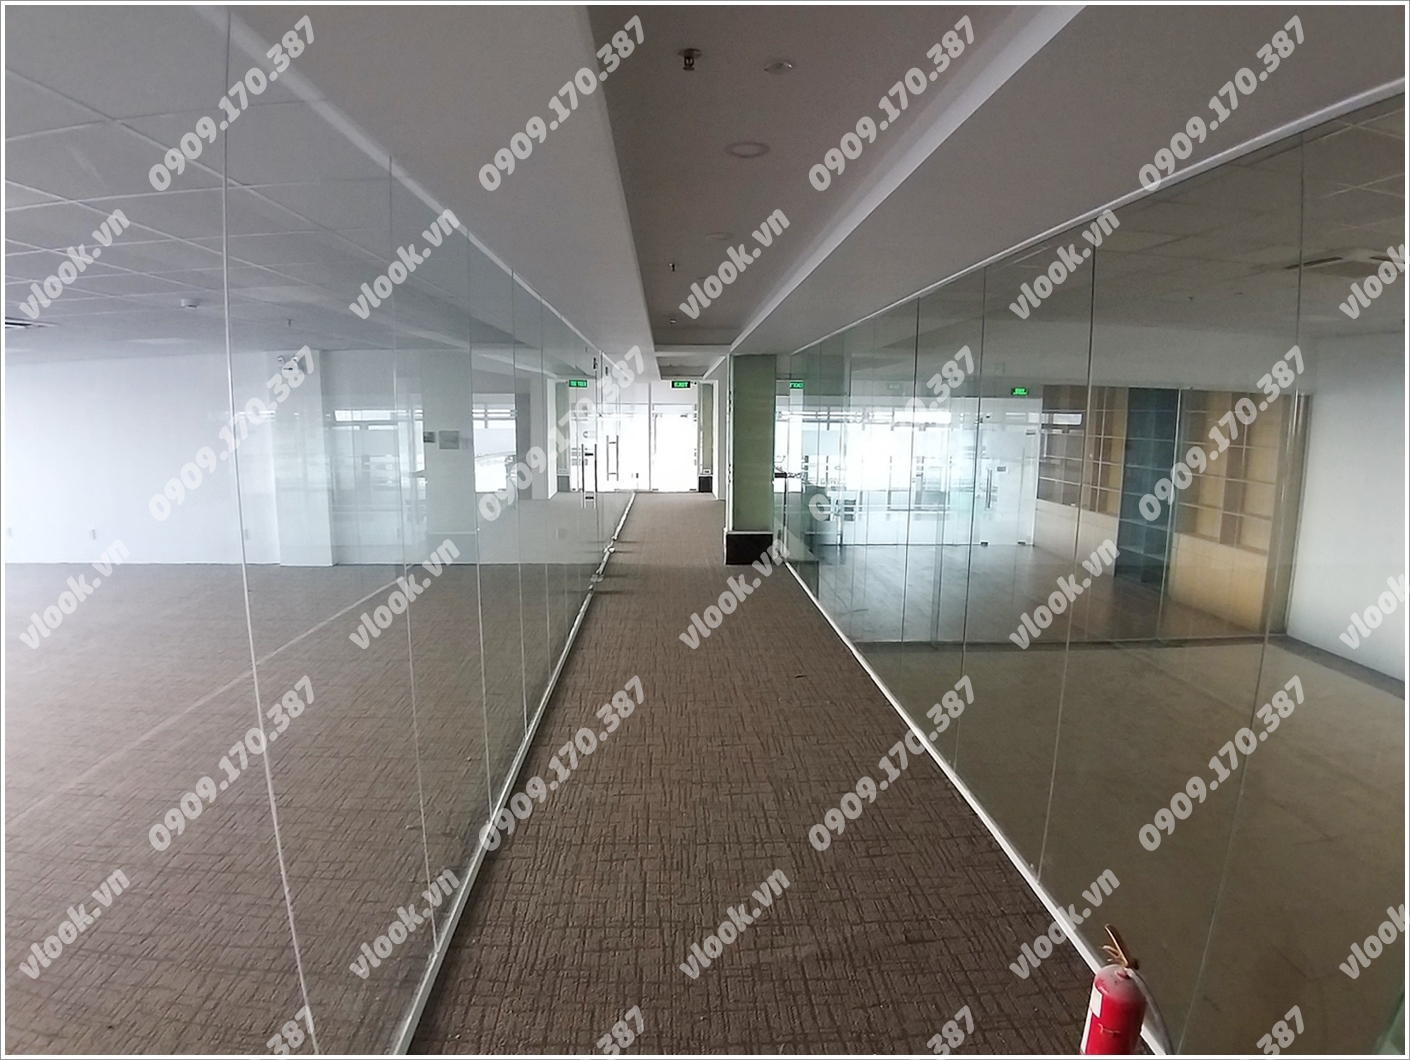 Bên trong cao ốc cho thuê văn phòng CT Plaza, Trường Sơn, Quận Tân Bình, TPHCM - vlook.vn